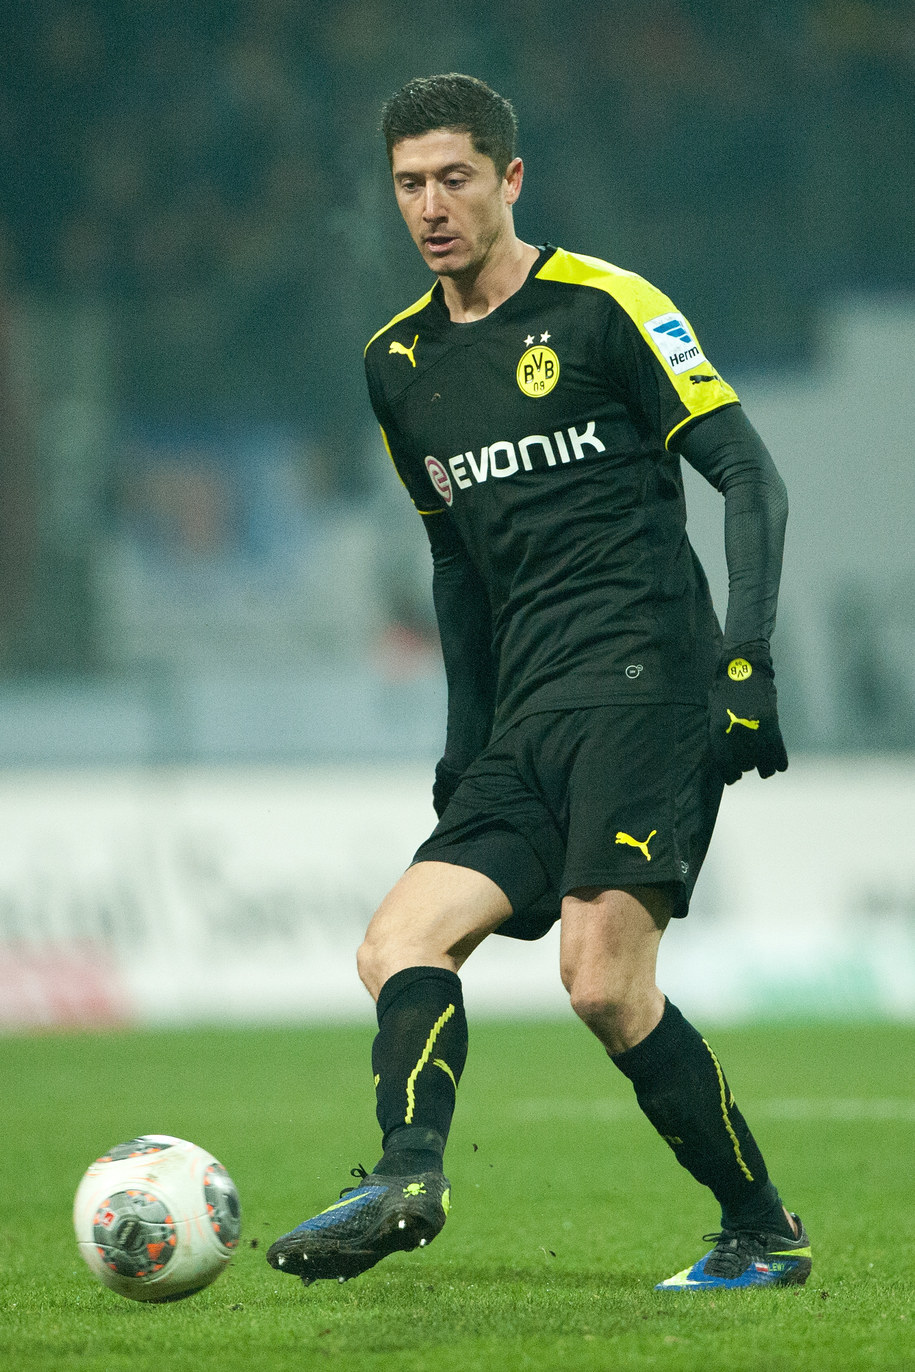 Lewandowski triumfuje w plebiscycie "Piłki Nożnej" - RMF 24